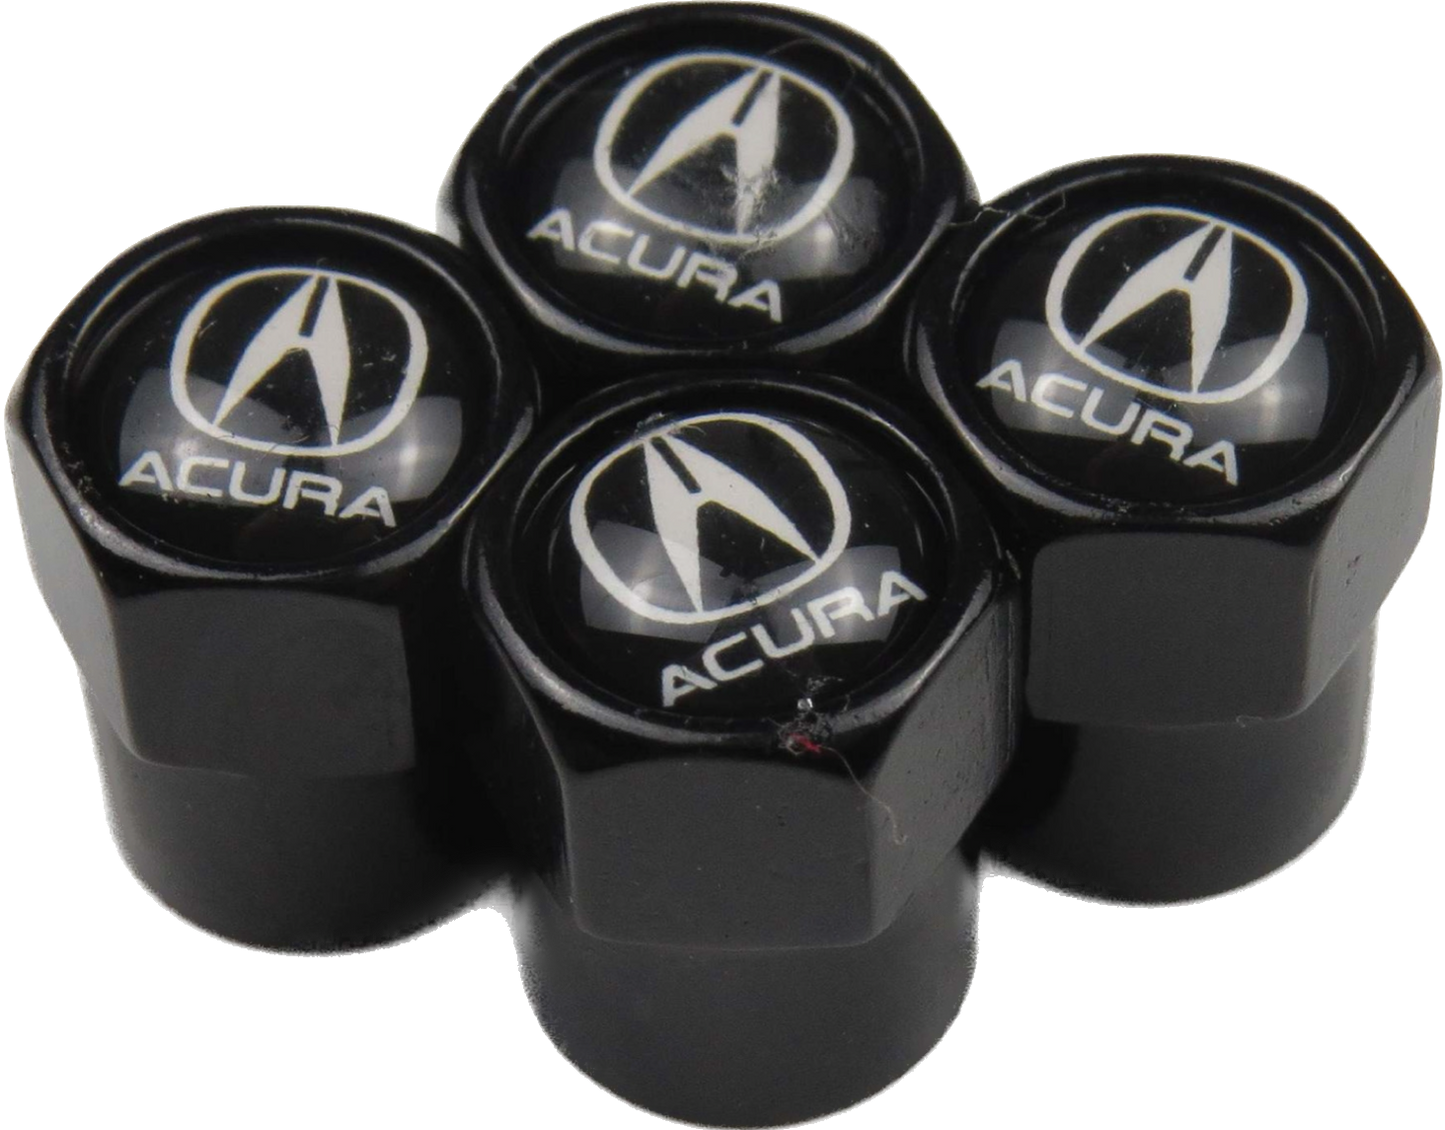 Honda Acura Valve Caps - Black